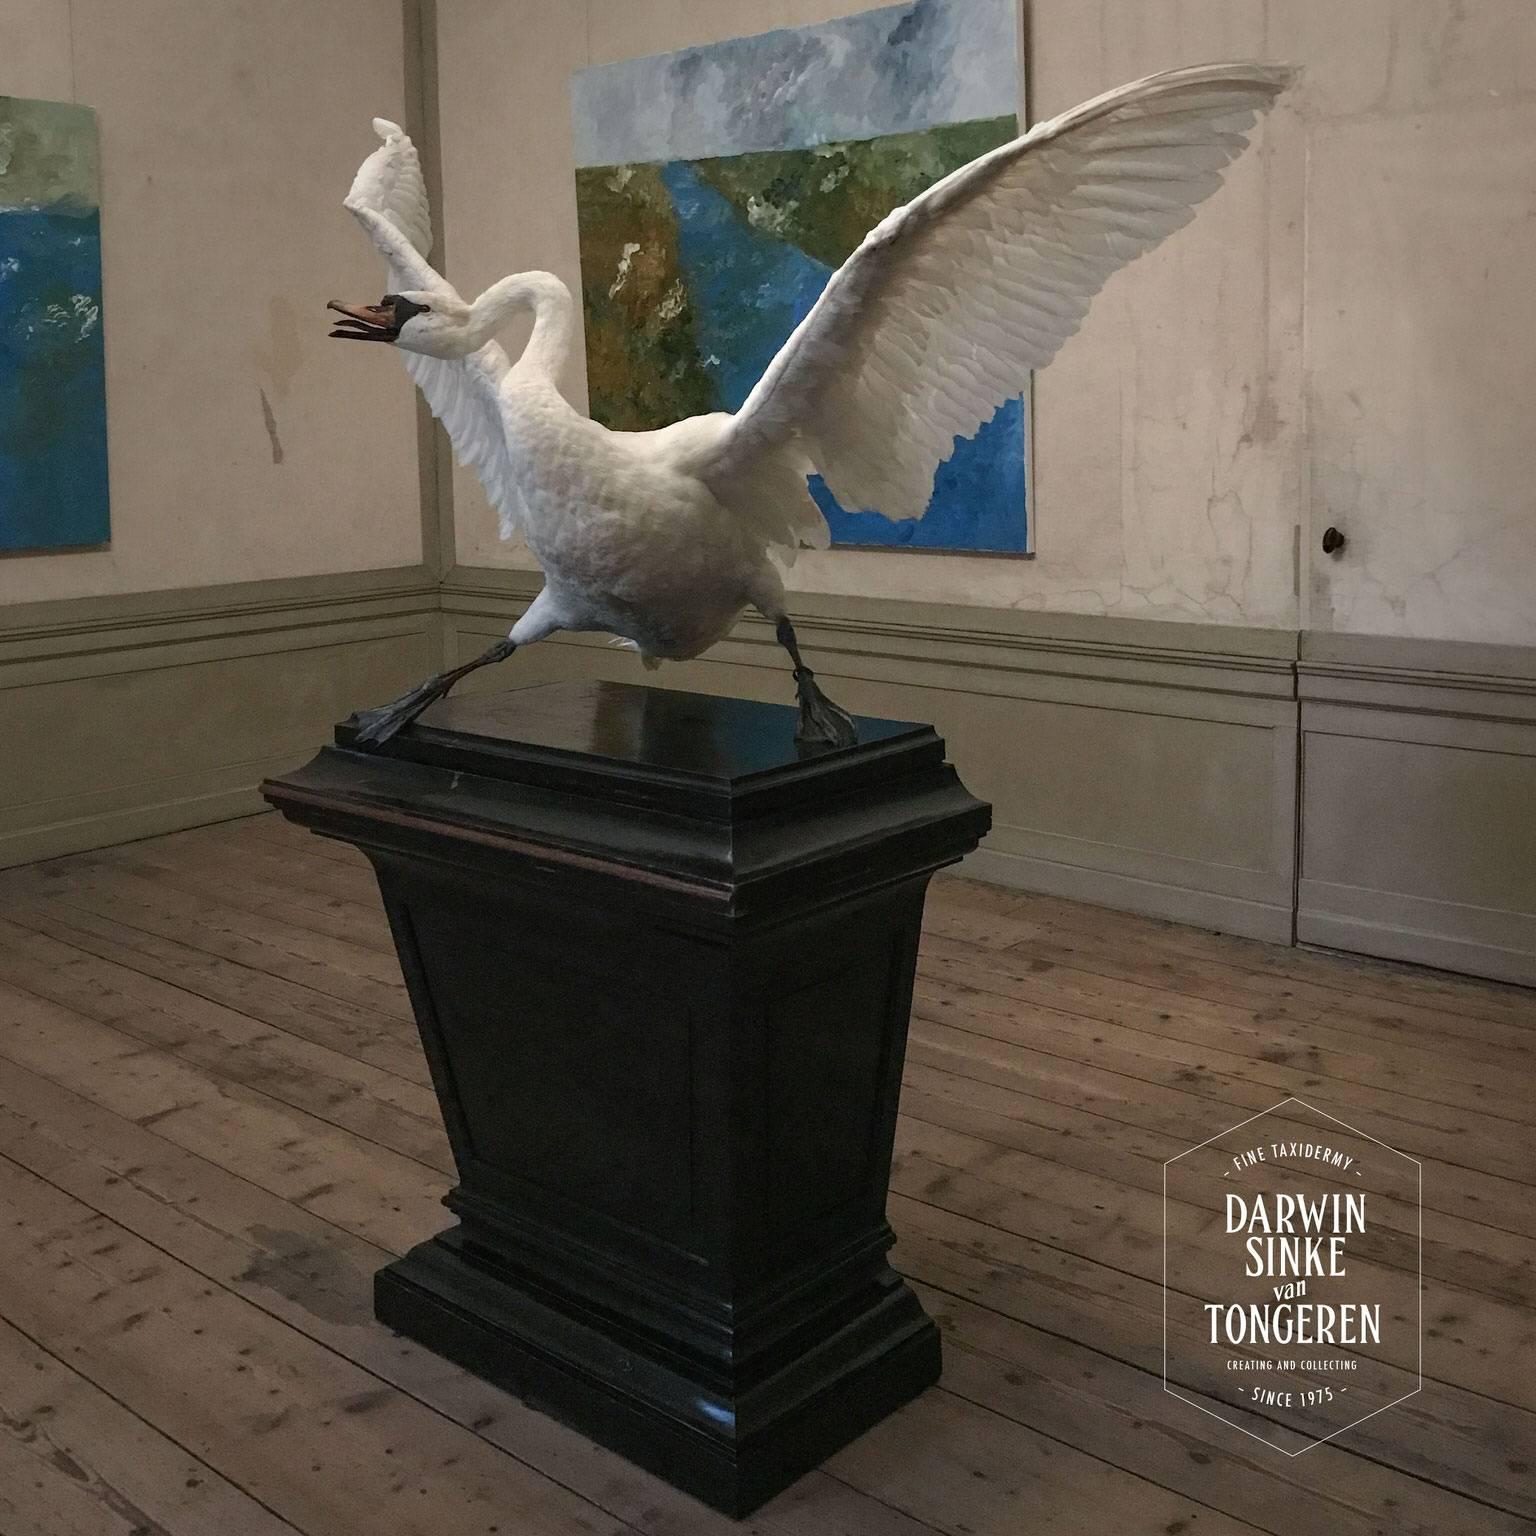 Asselijn's Threatened Swan from Exhibition TIER at MOA by Sinke & Van Tongeren 2